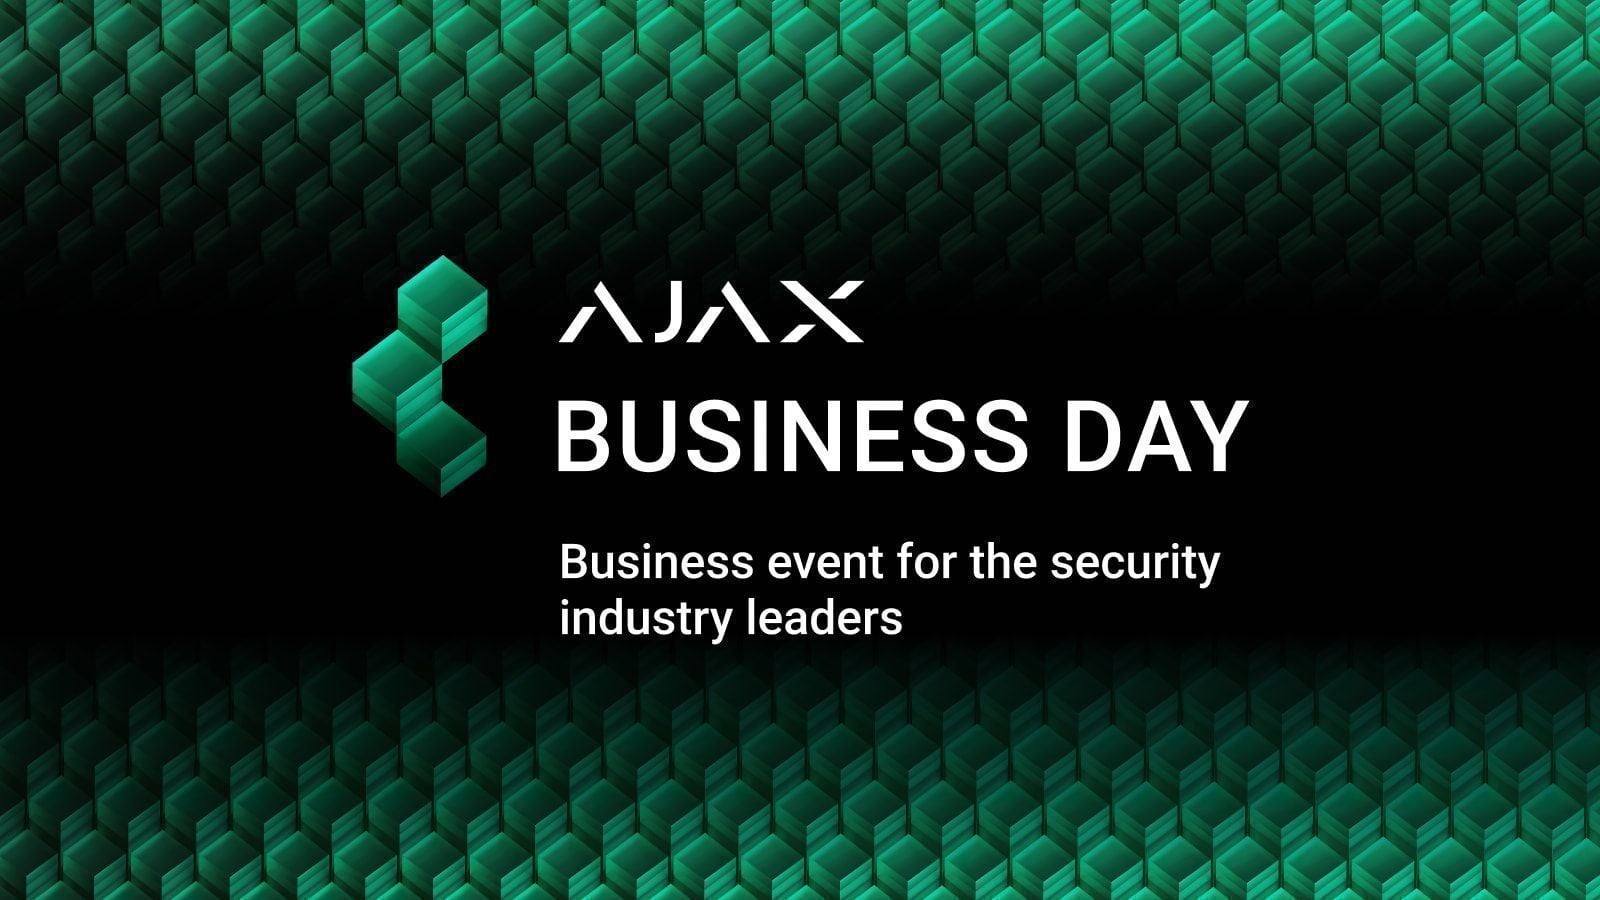 Ajax Business Day à Lyon